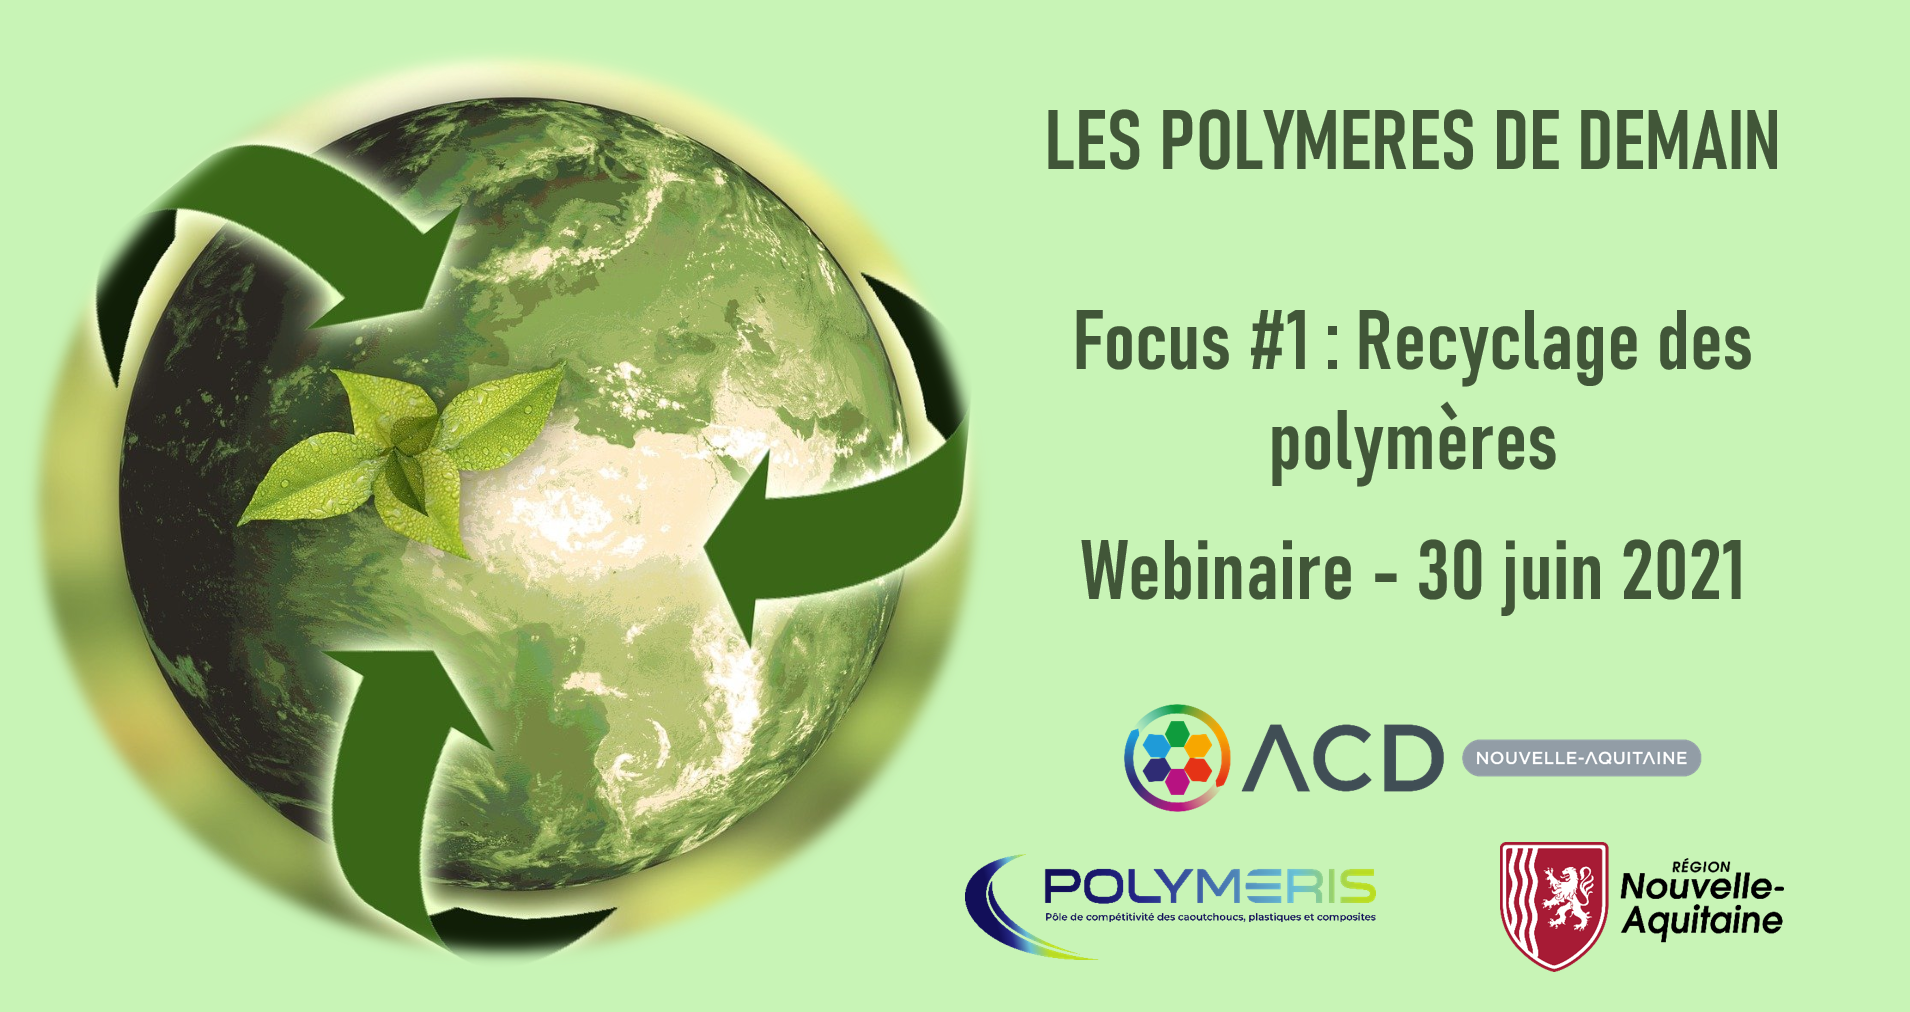 Polymères de demain focus recyclage